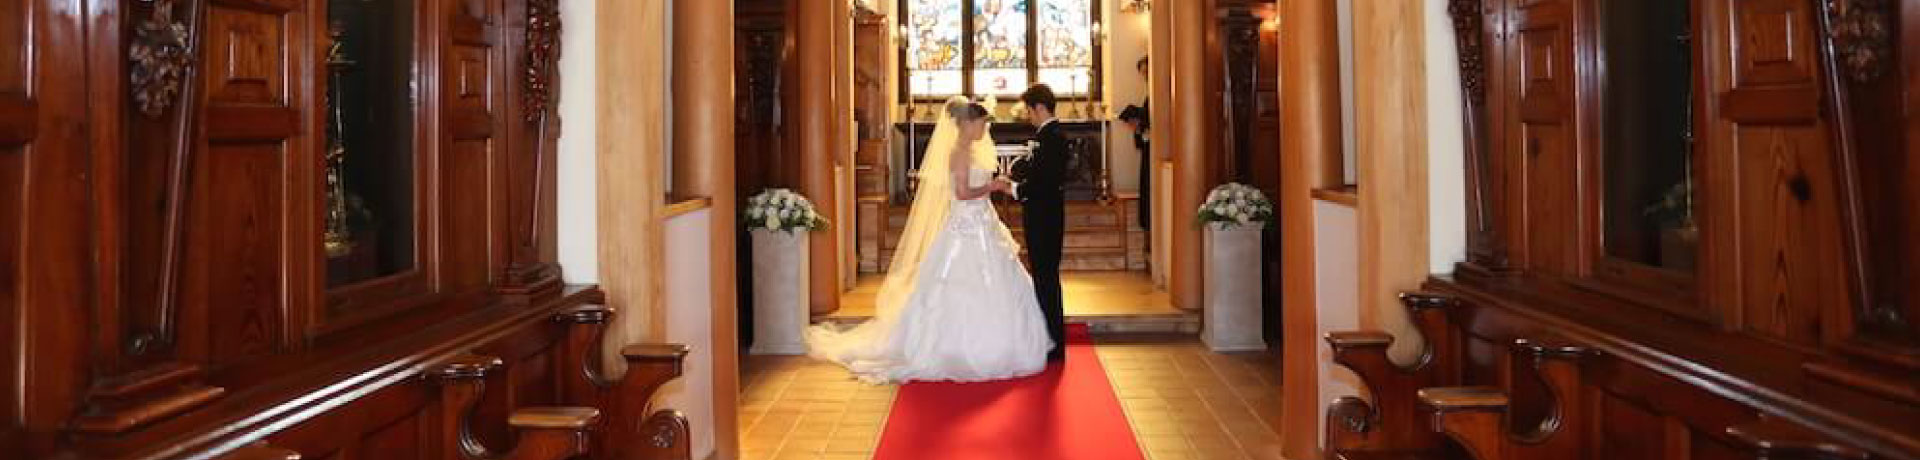 大分・別府の式場紹介・結婚式イベントプロデュース ブライダルプロデュースラポール 聖ロバート教会